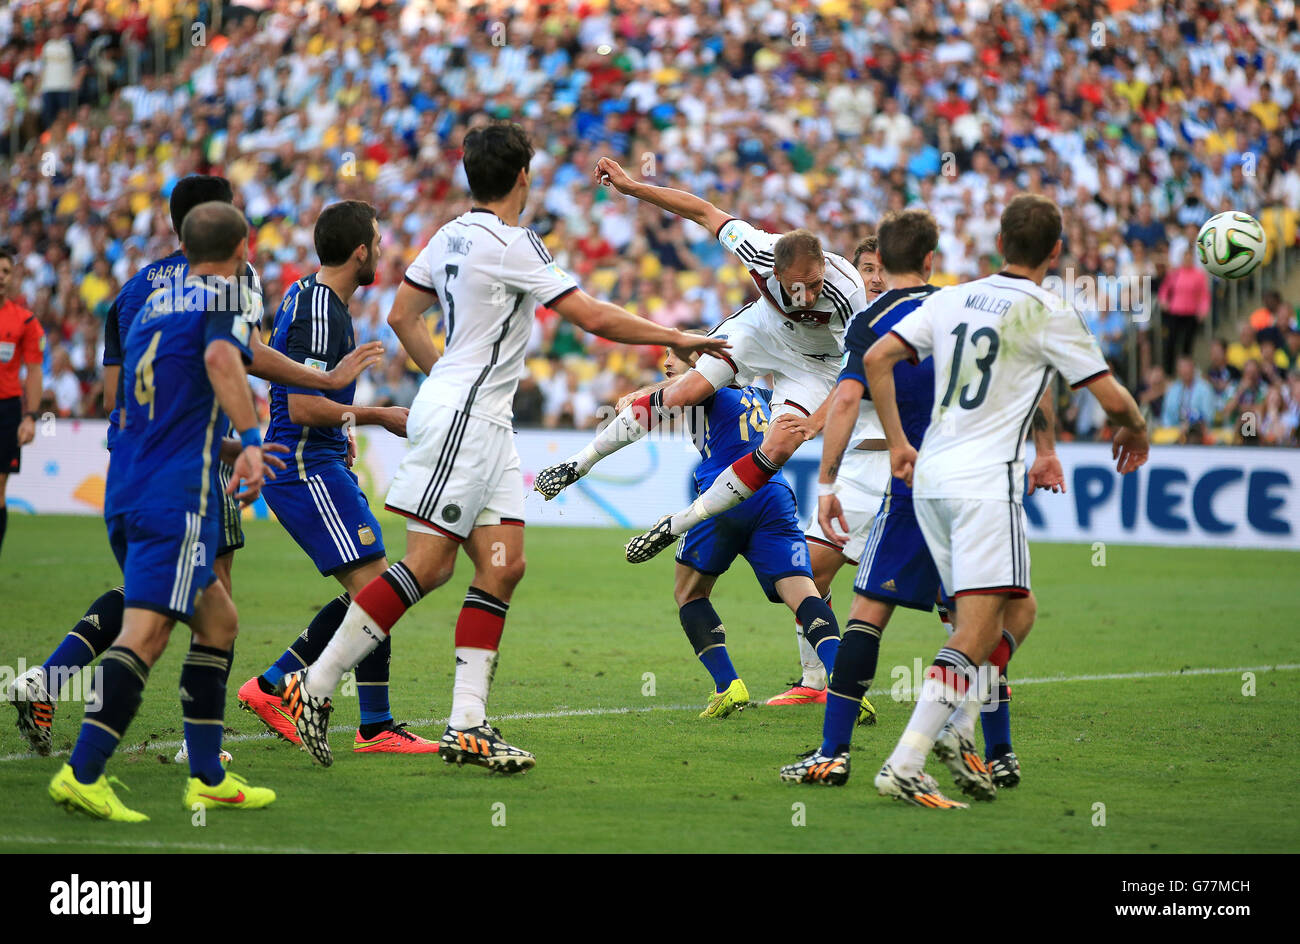 Football - coupe du monde de la FIFA 2014 - finale - Allemagne / Argentine - Estadio do Maracana.Benedikt Howedes (centre) en Allemagne avec un effort dirigé sur le but Banque D'Images